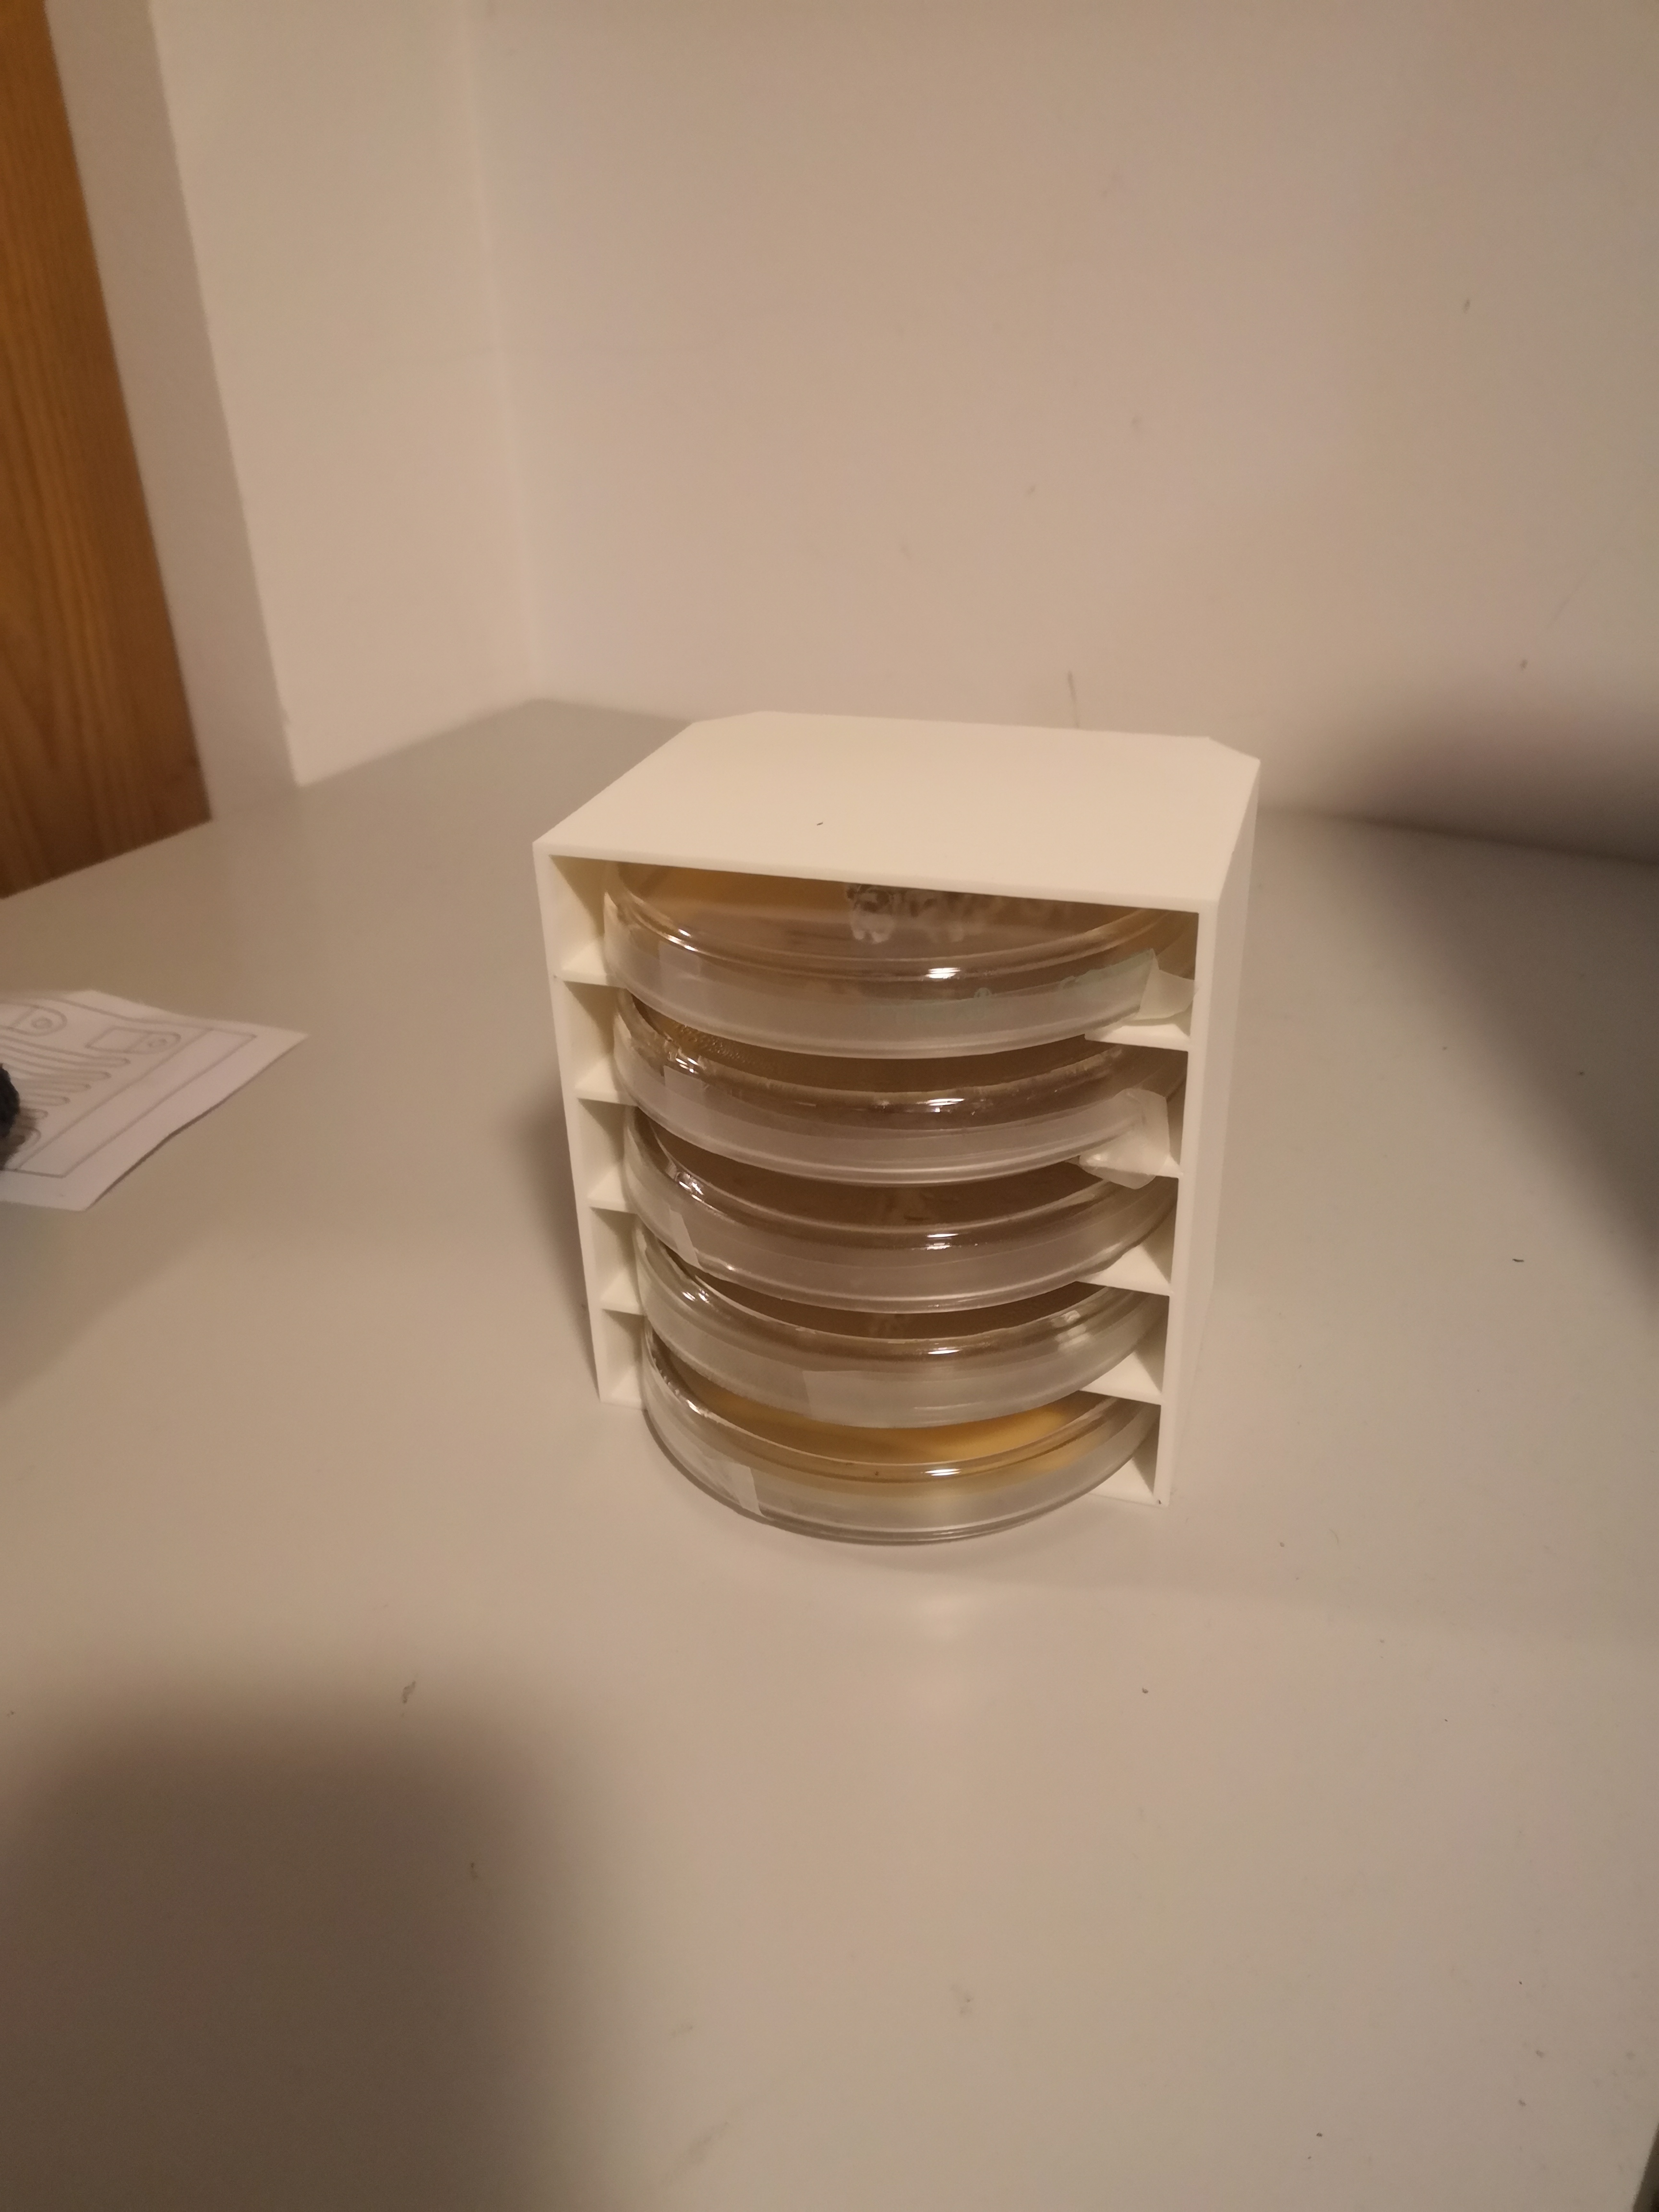 Petri dish rack